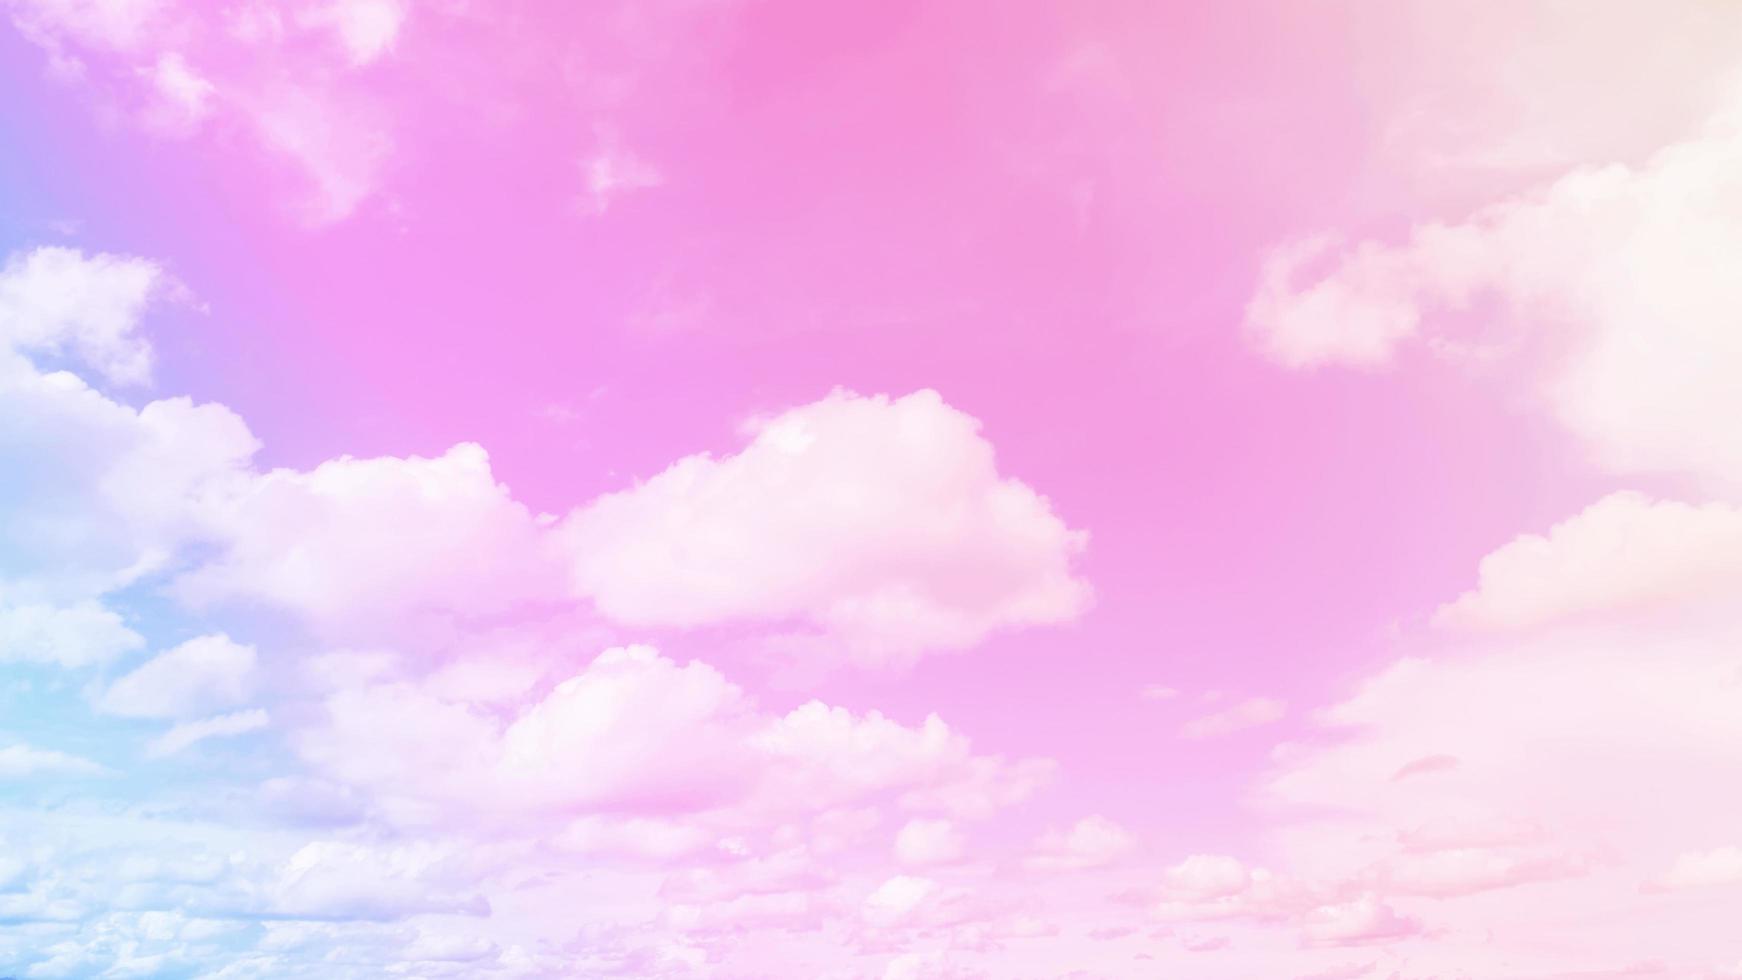 cielo e nuvole in un bellissimo sfondo rosa pastello. astratto dolce sfondo sognante cielo colorato e romantico foto